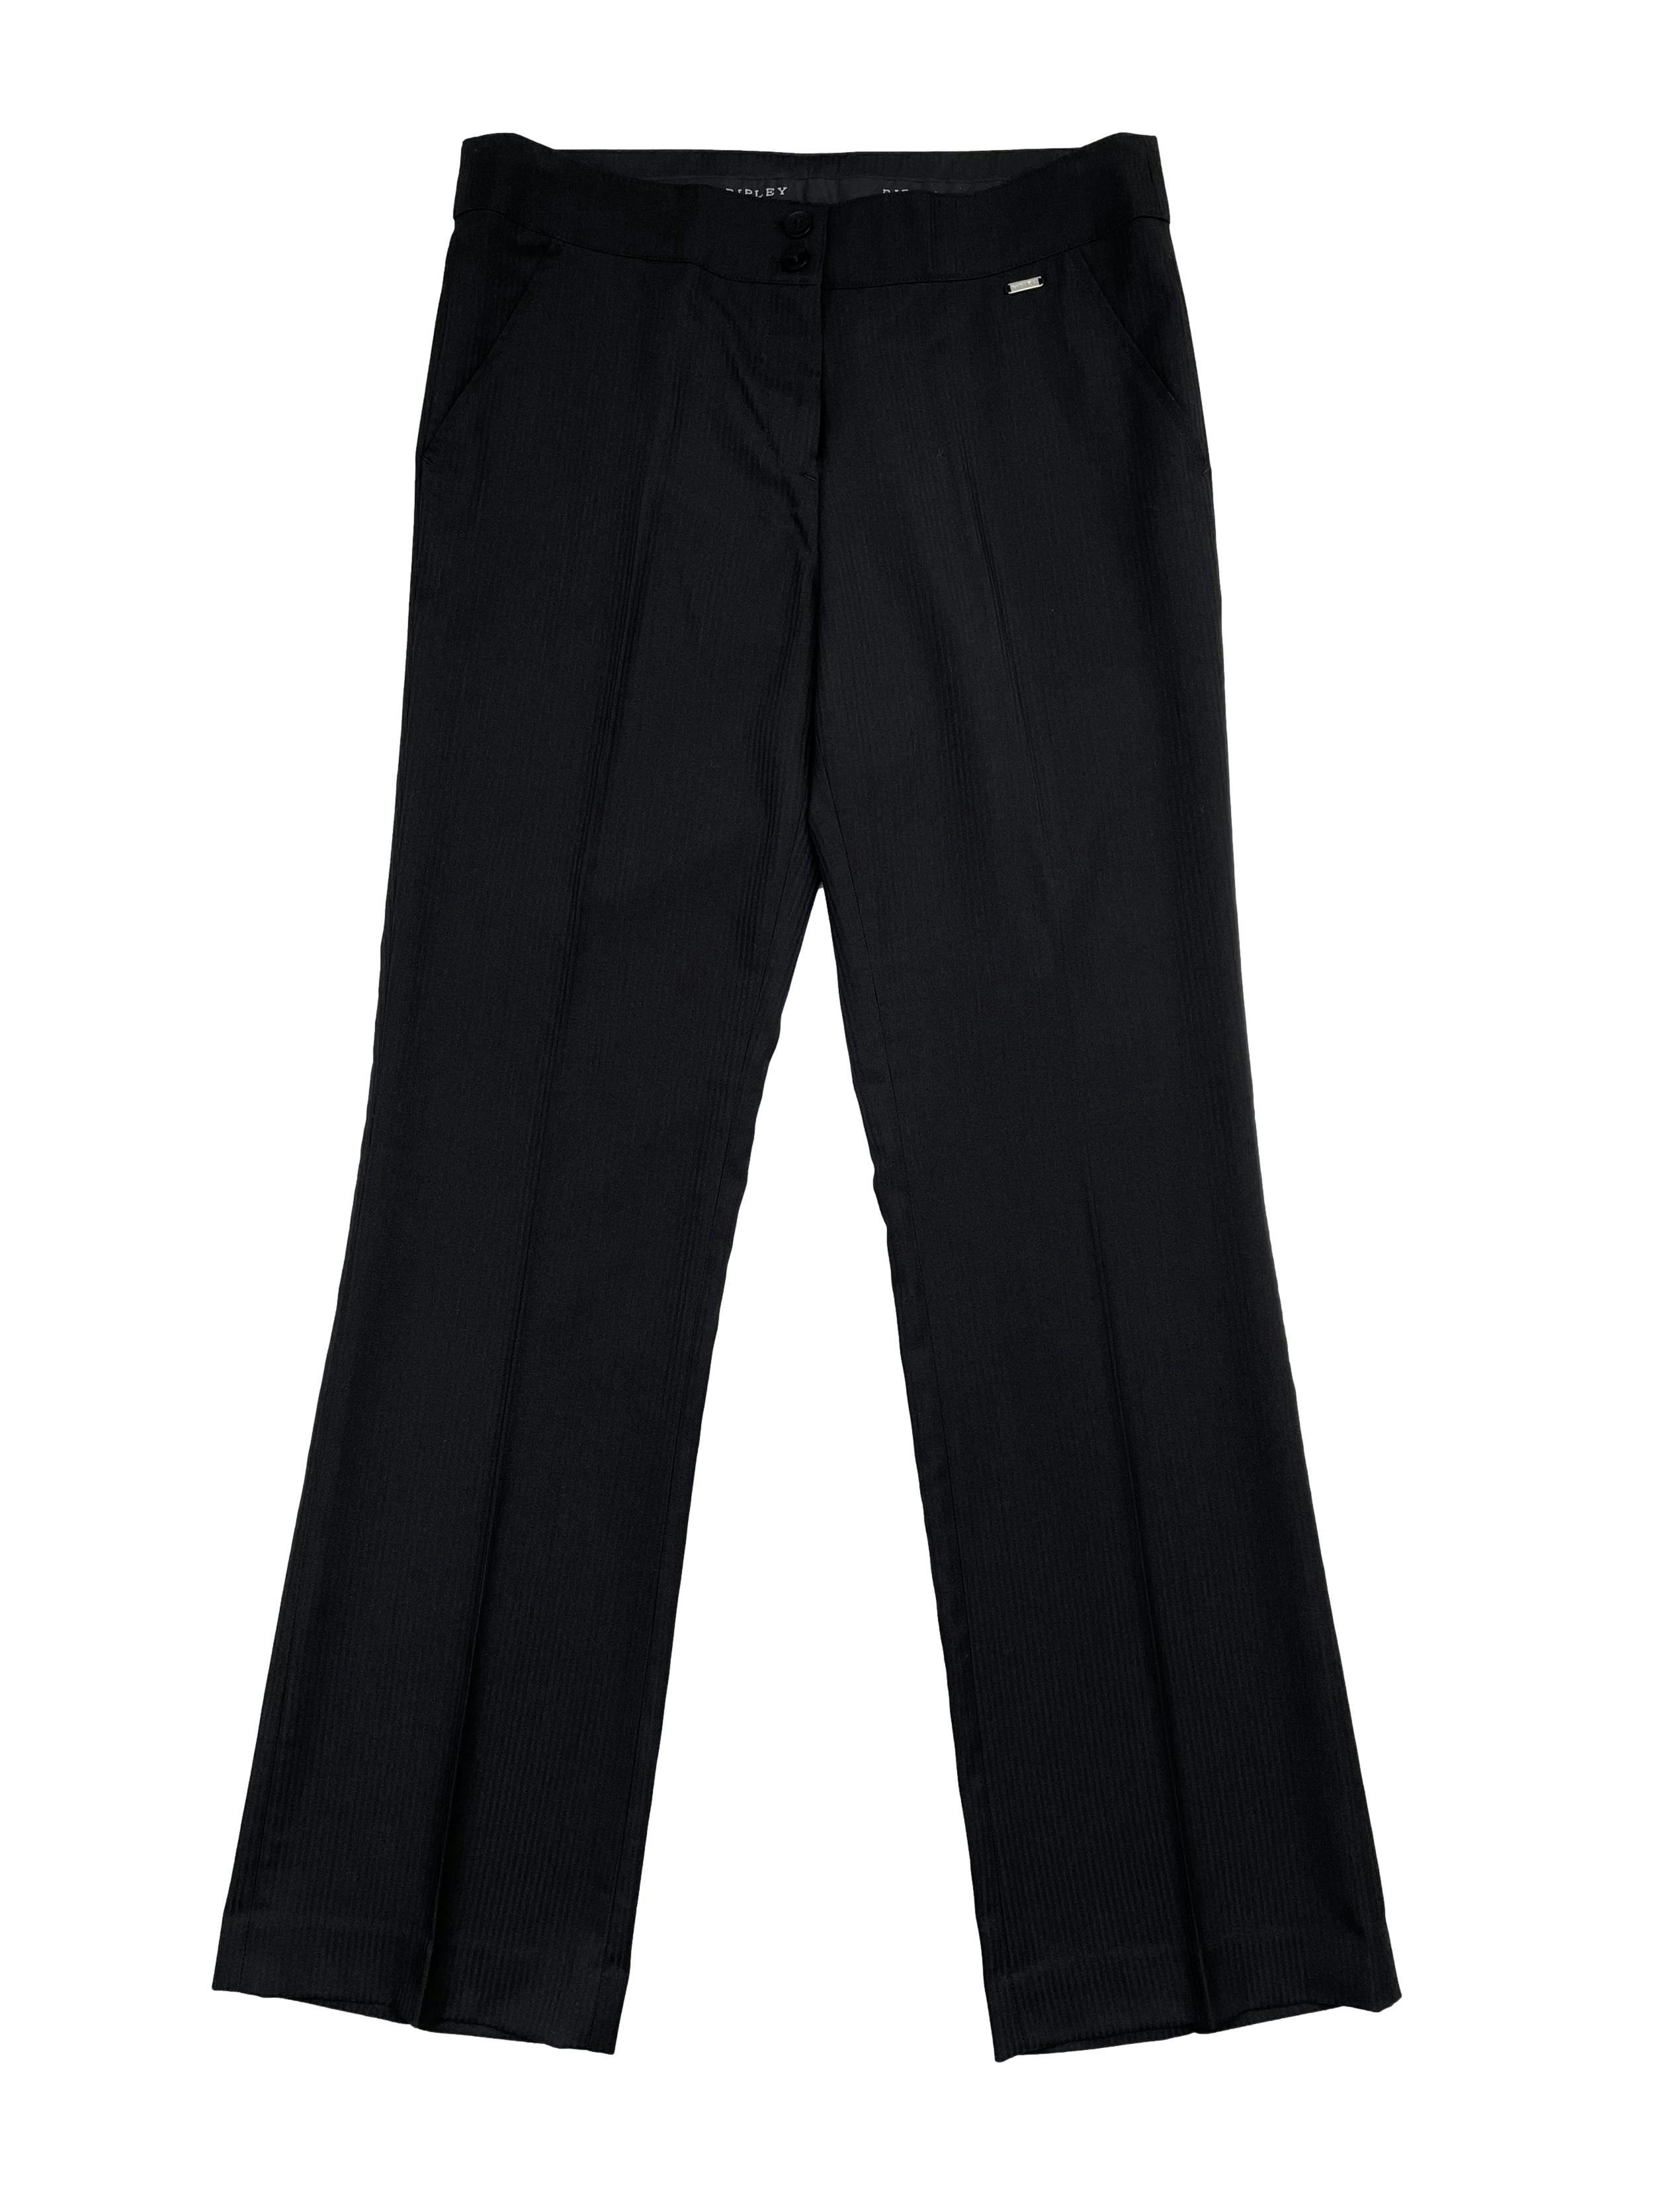 Pantalón Ripley formal negro con líneas al tono, tiro medio y corte recto. Cintura 84cm Largo 108cm. 